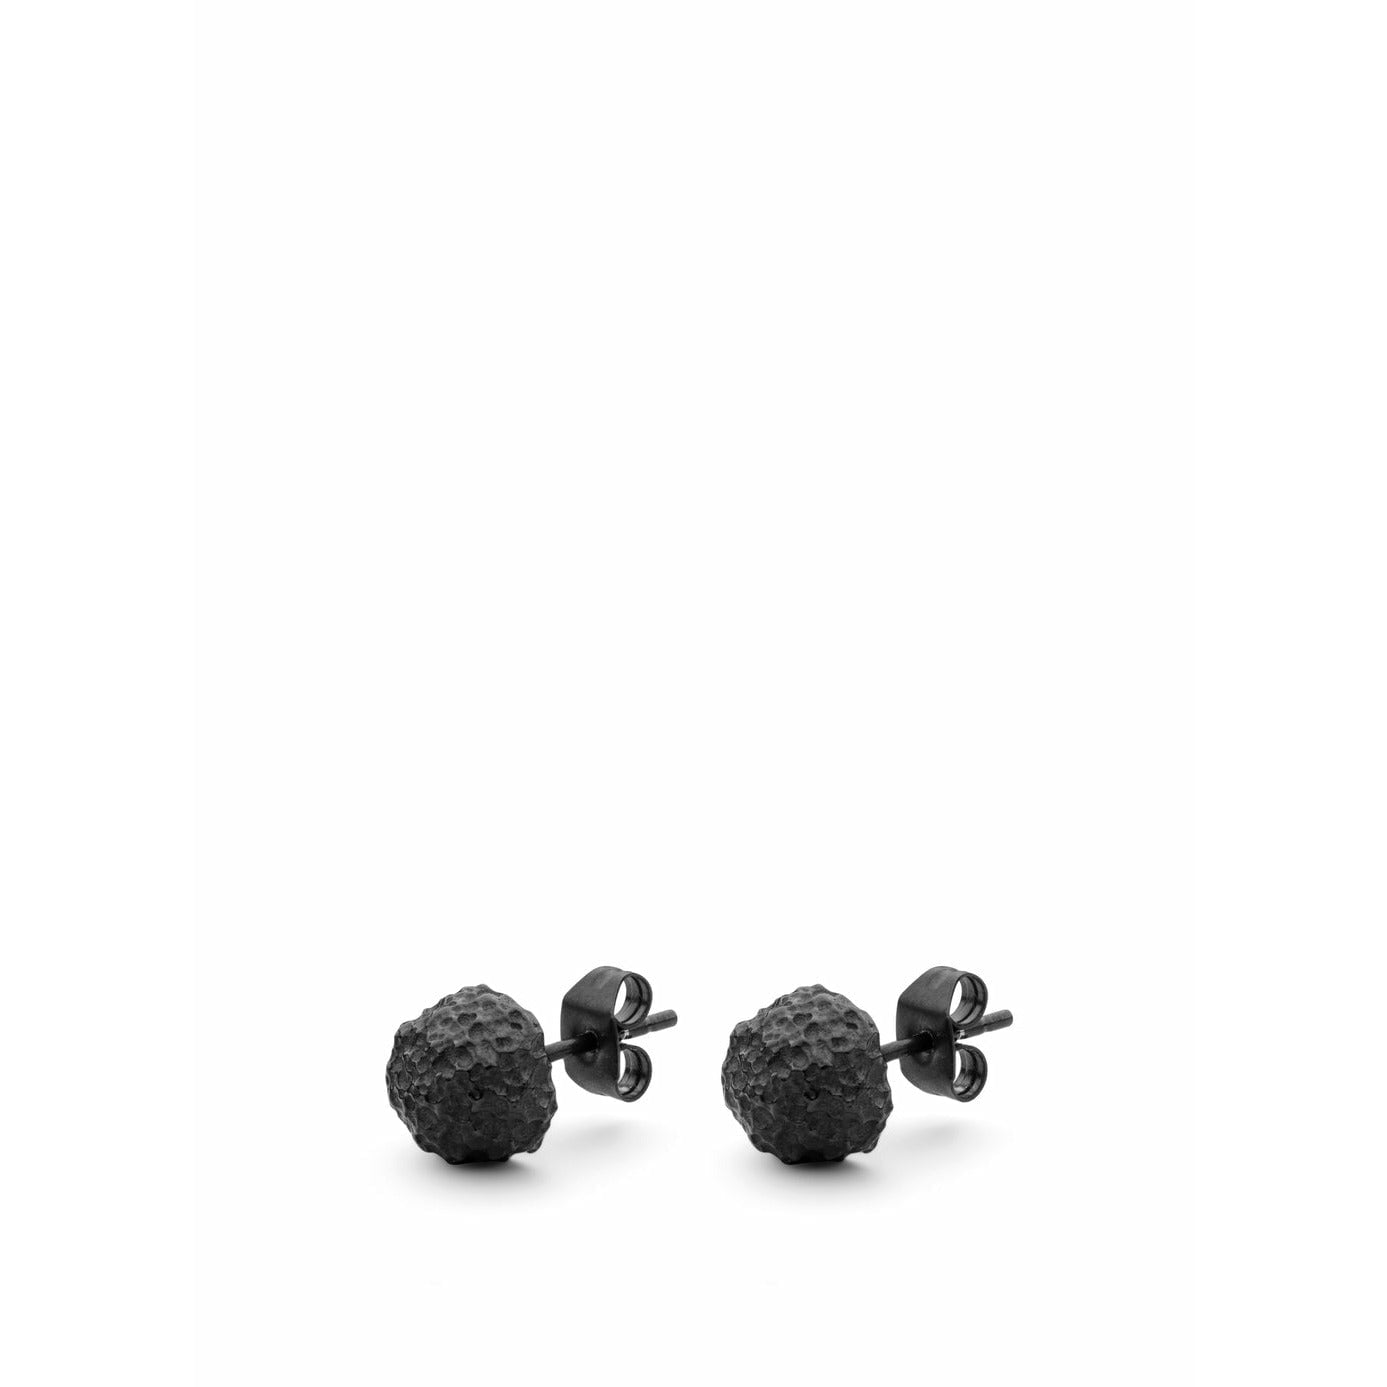 Skultuna Opaque Objects Earrings, 316 L Steel